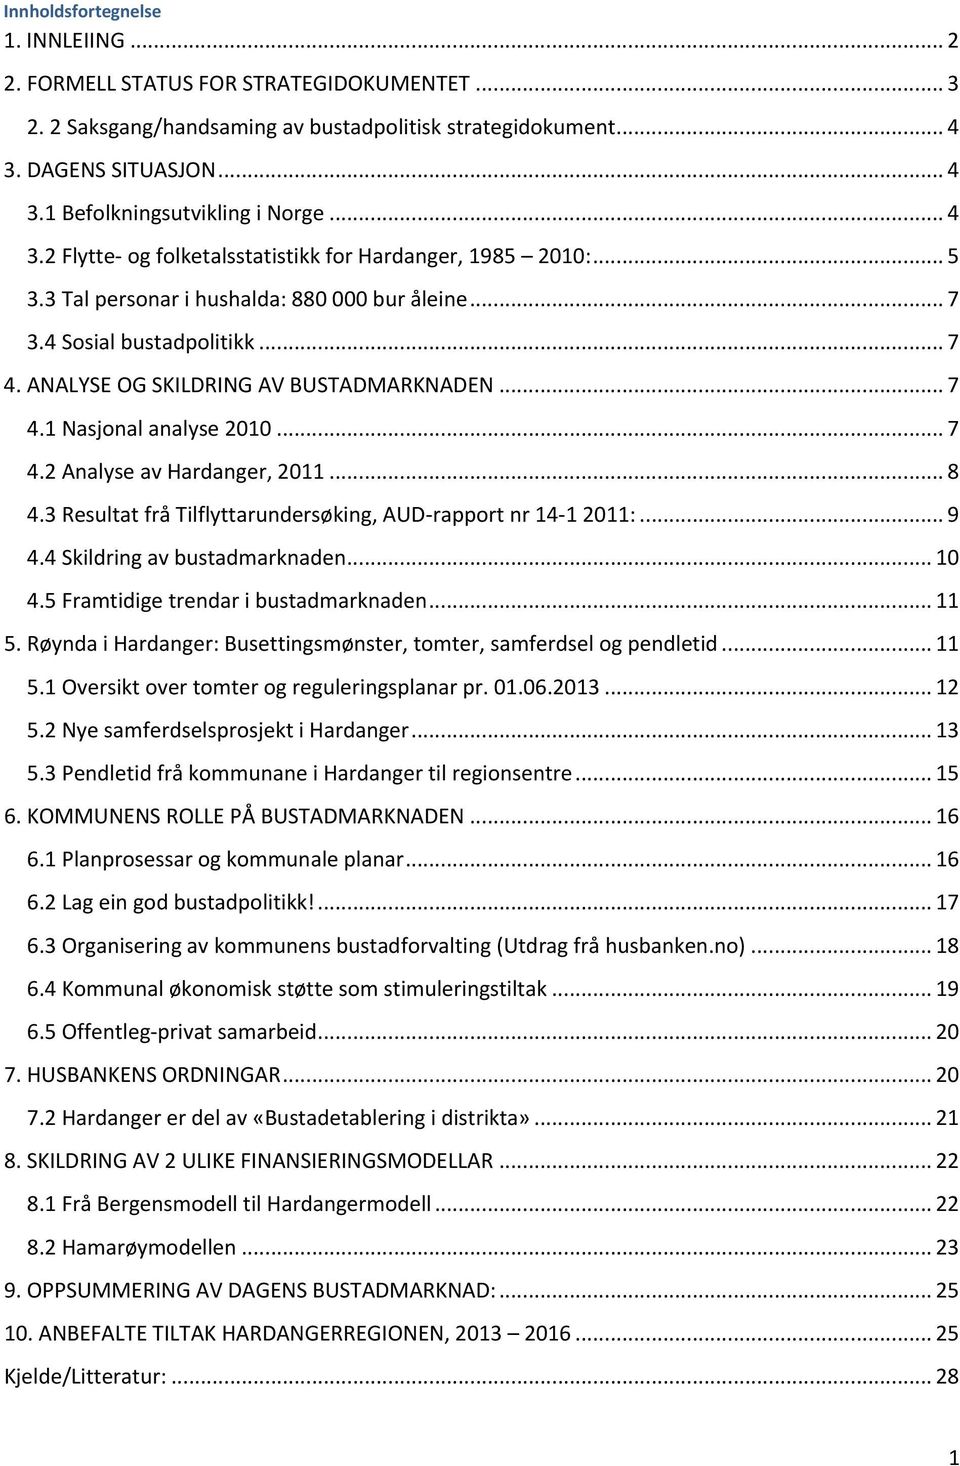 .. 7 4.1 Nasjonal analyse 2010... 7 4.2 Analyse av Hardanger, 2011... 8 4.3 Resultat frå Tilflyttarundersøking, AUD- rapport nr 14-1 2011:... 9 4.4 Skildring av bustadmarknaden... 10 4.